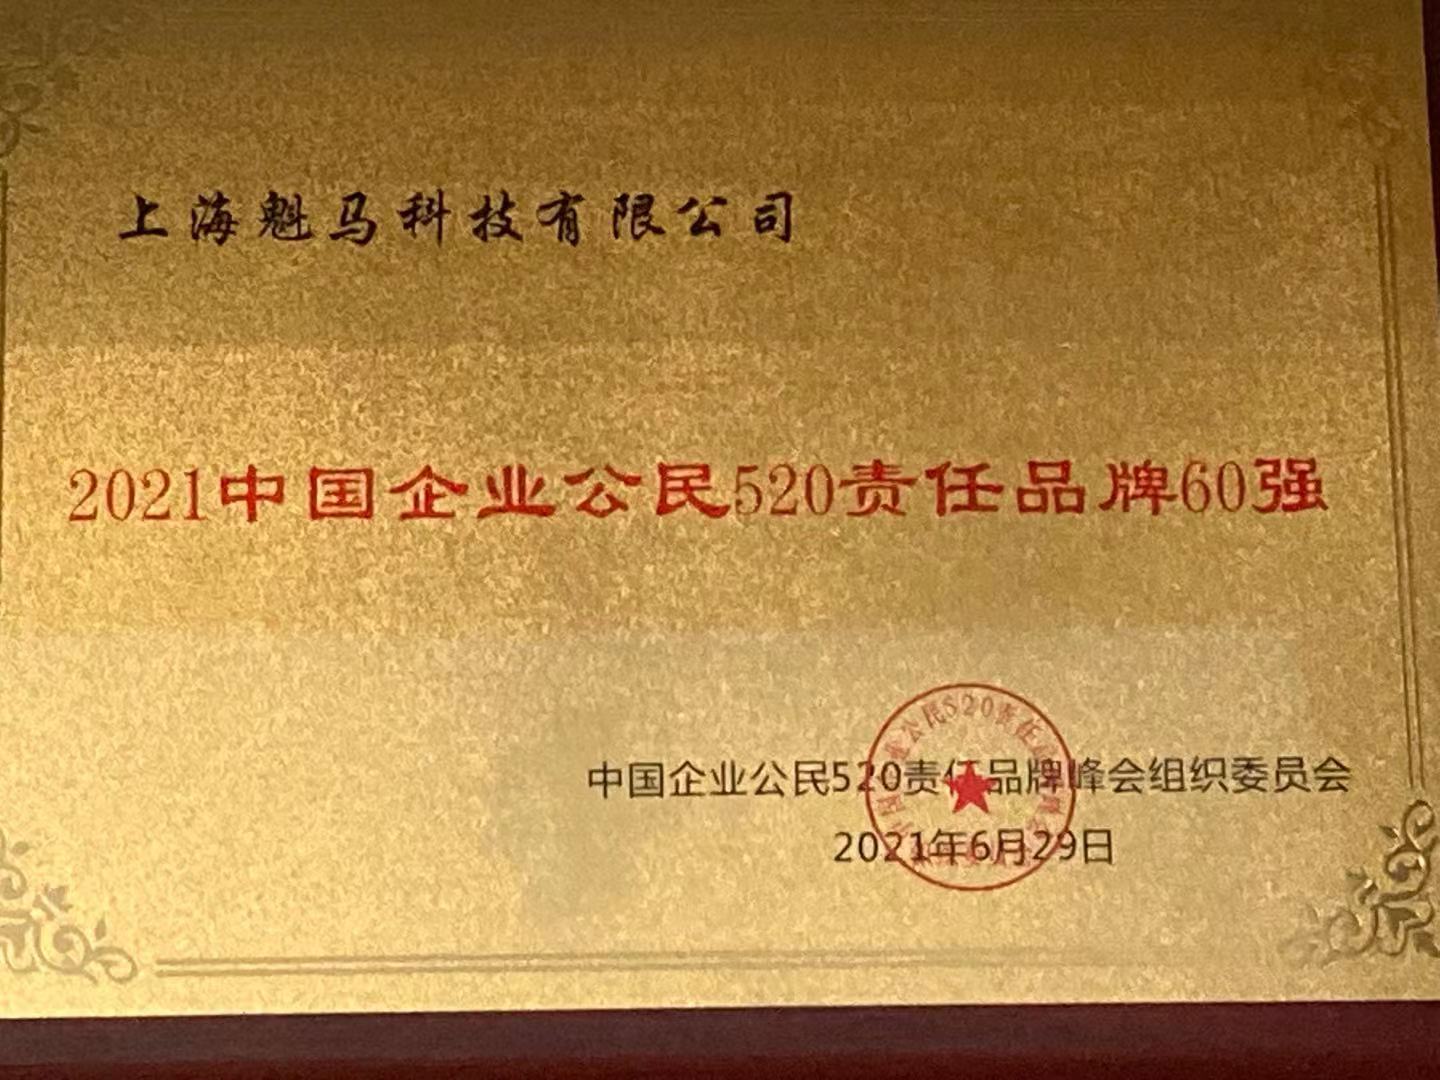 艾特租荣获“2021中国企业公民520责任品牌60强”榜单，责任品牌彰显企业担当 